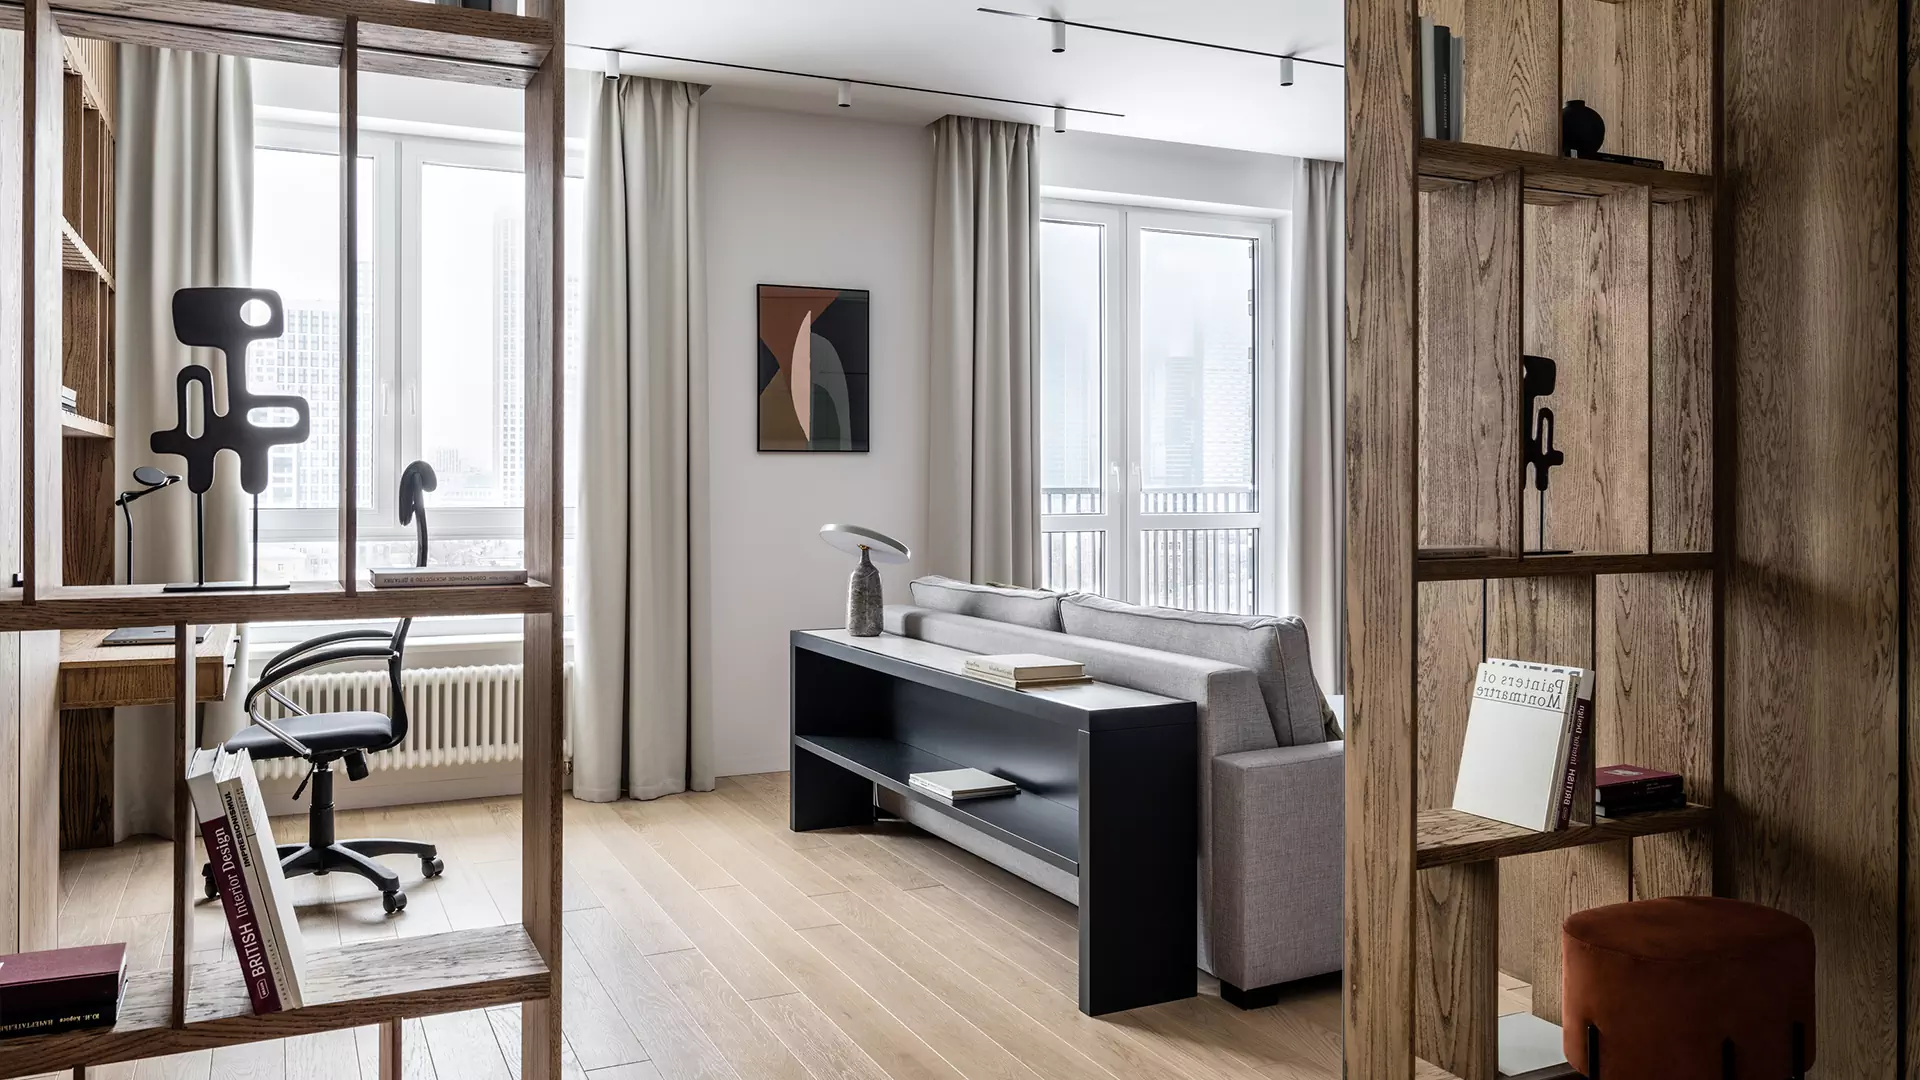 Динамичные решения в спокойном интерьере квартиры для молодого человека — проект студии ANDdesign